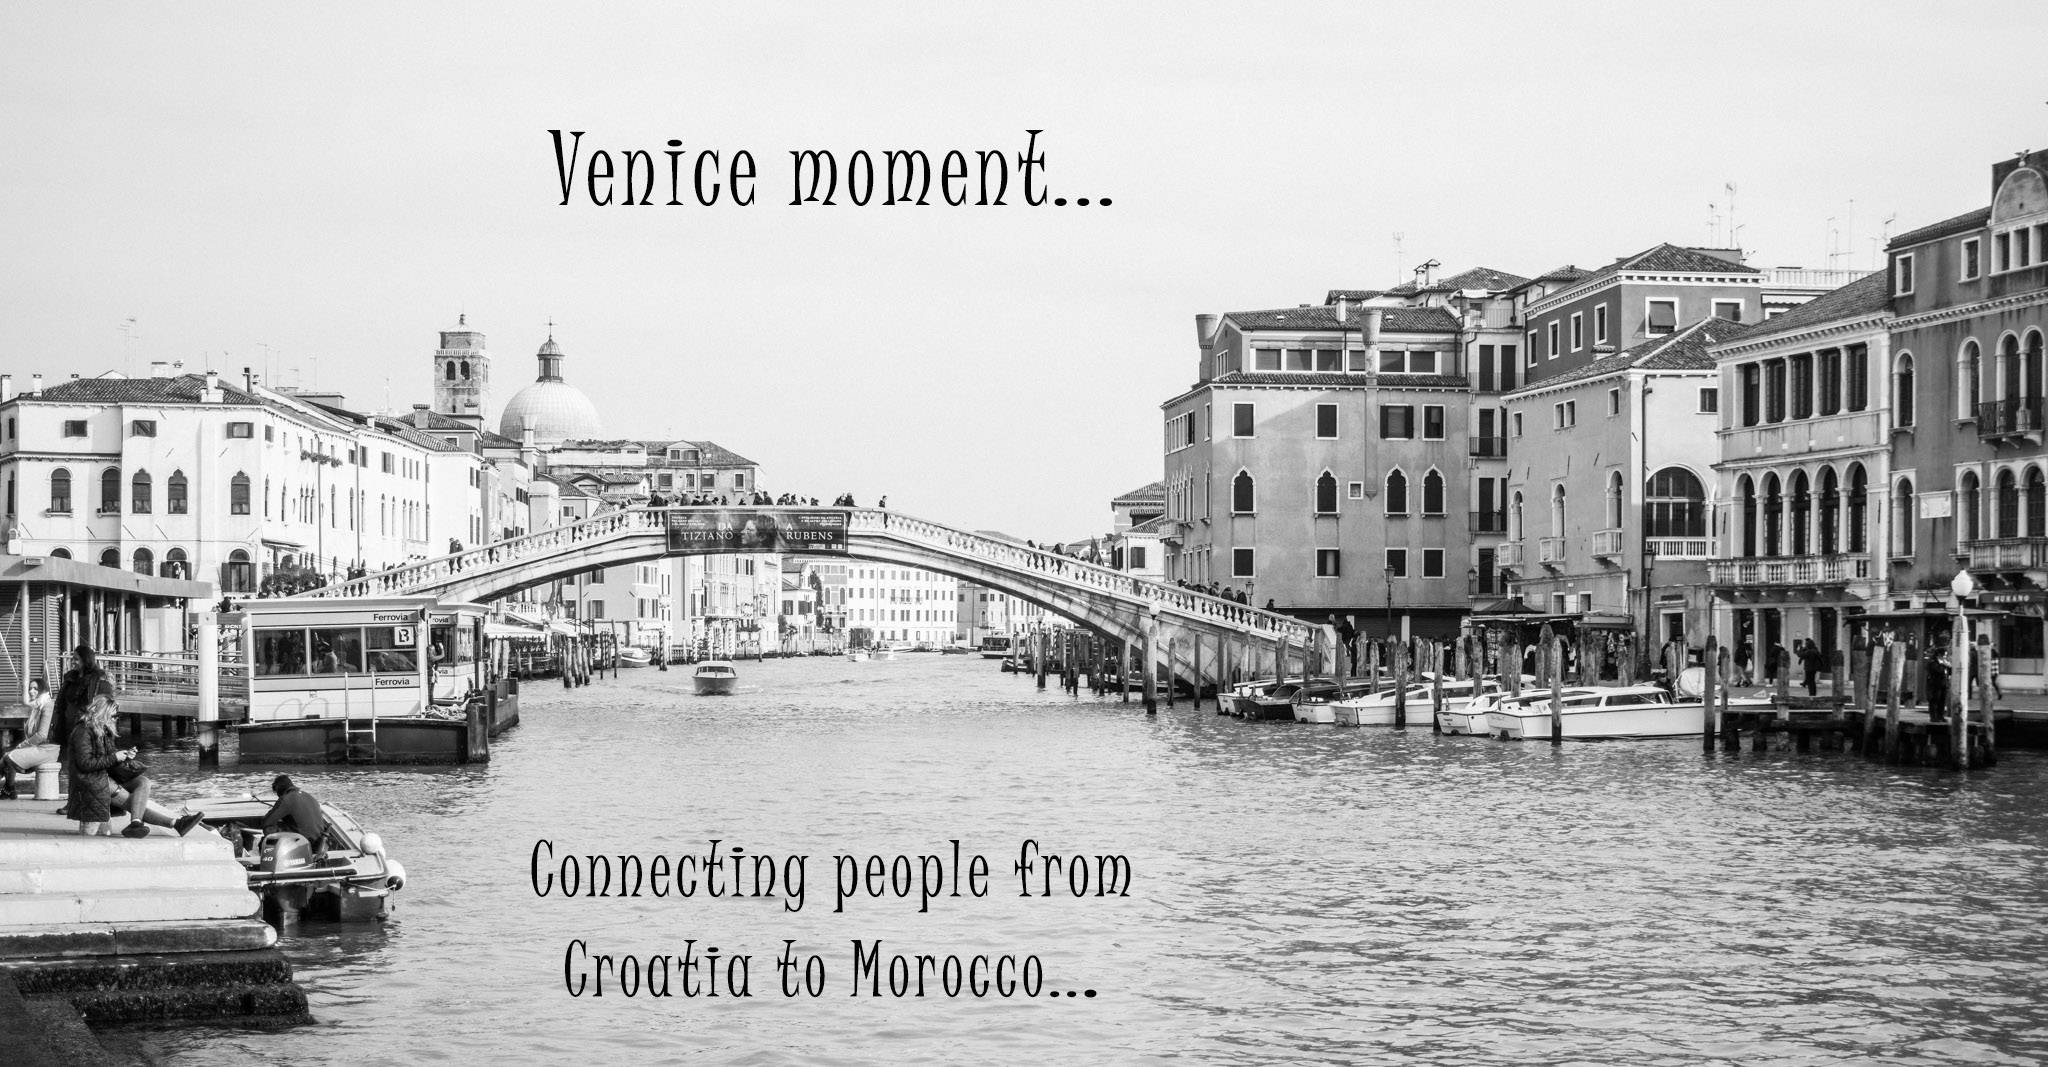 Venice / Mestre, Italy, December 6th-December 8th 2019